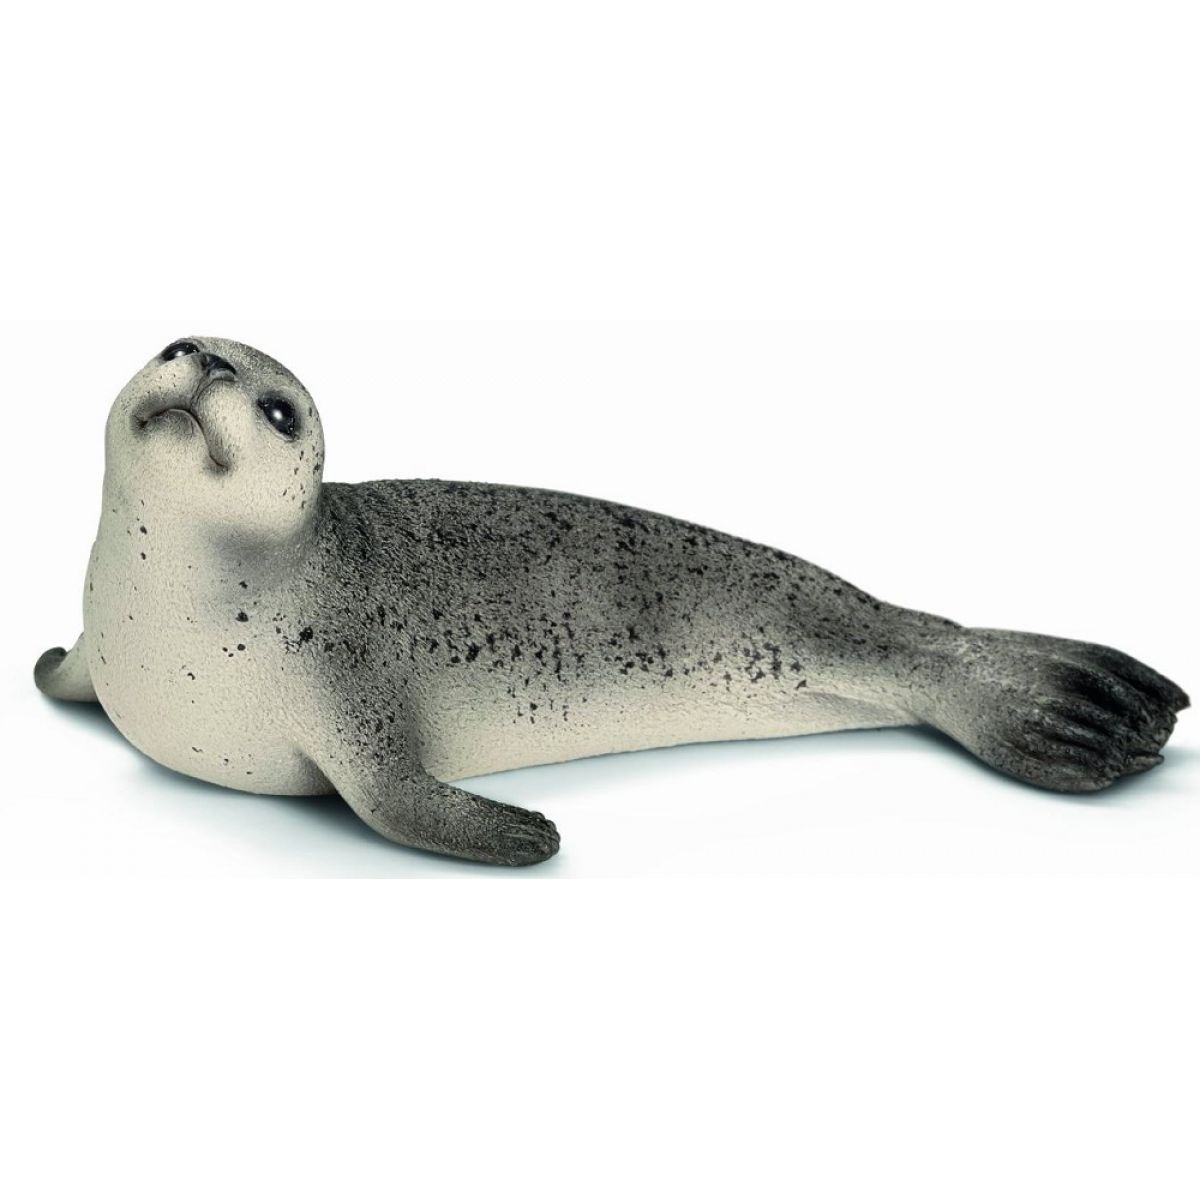 Schleich Wild Life Seal